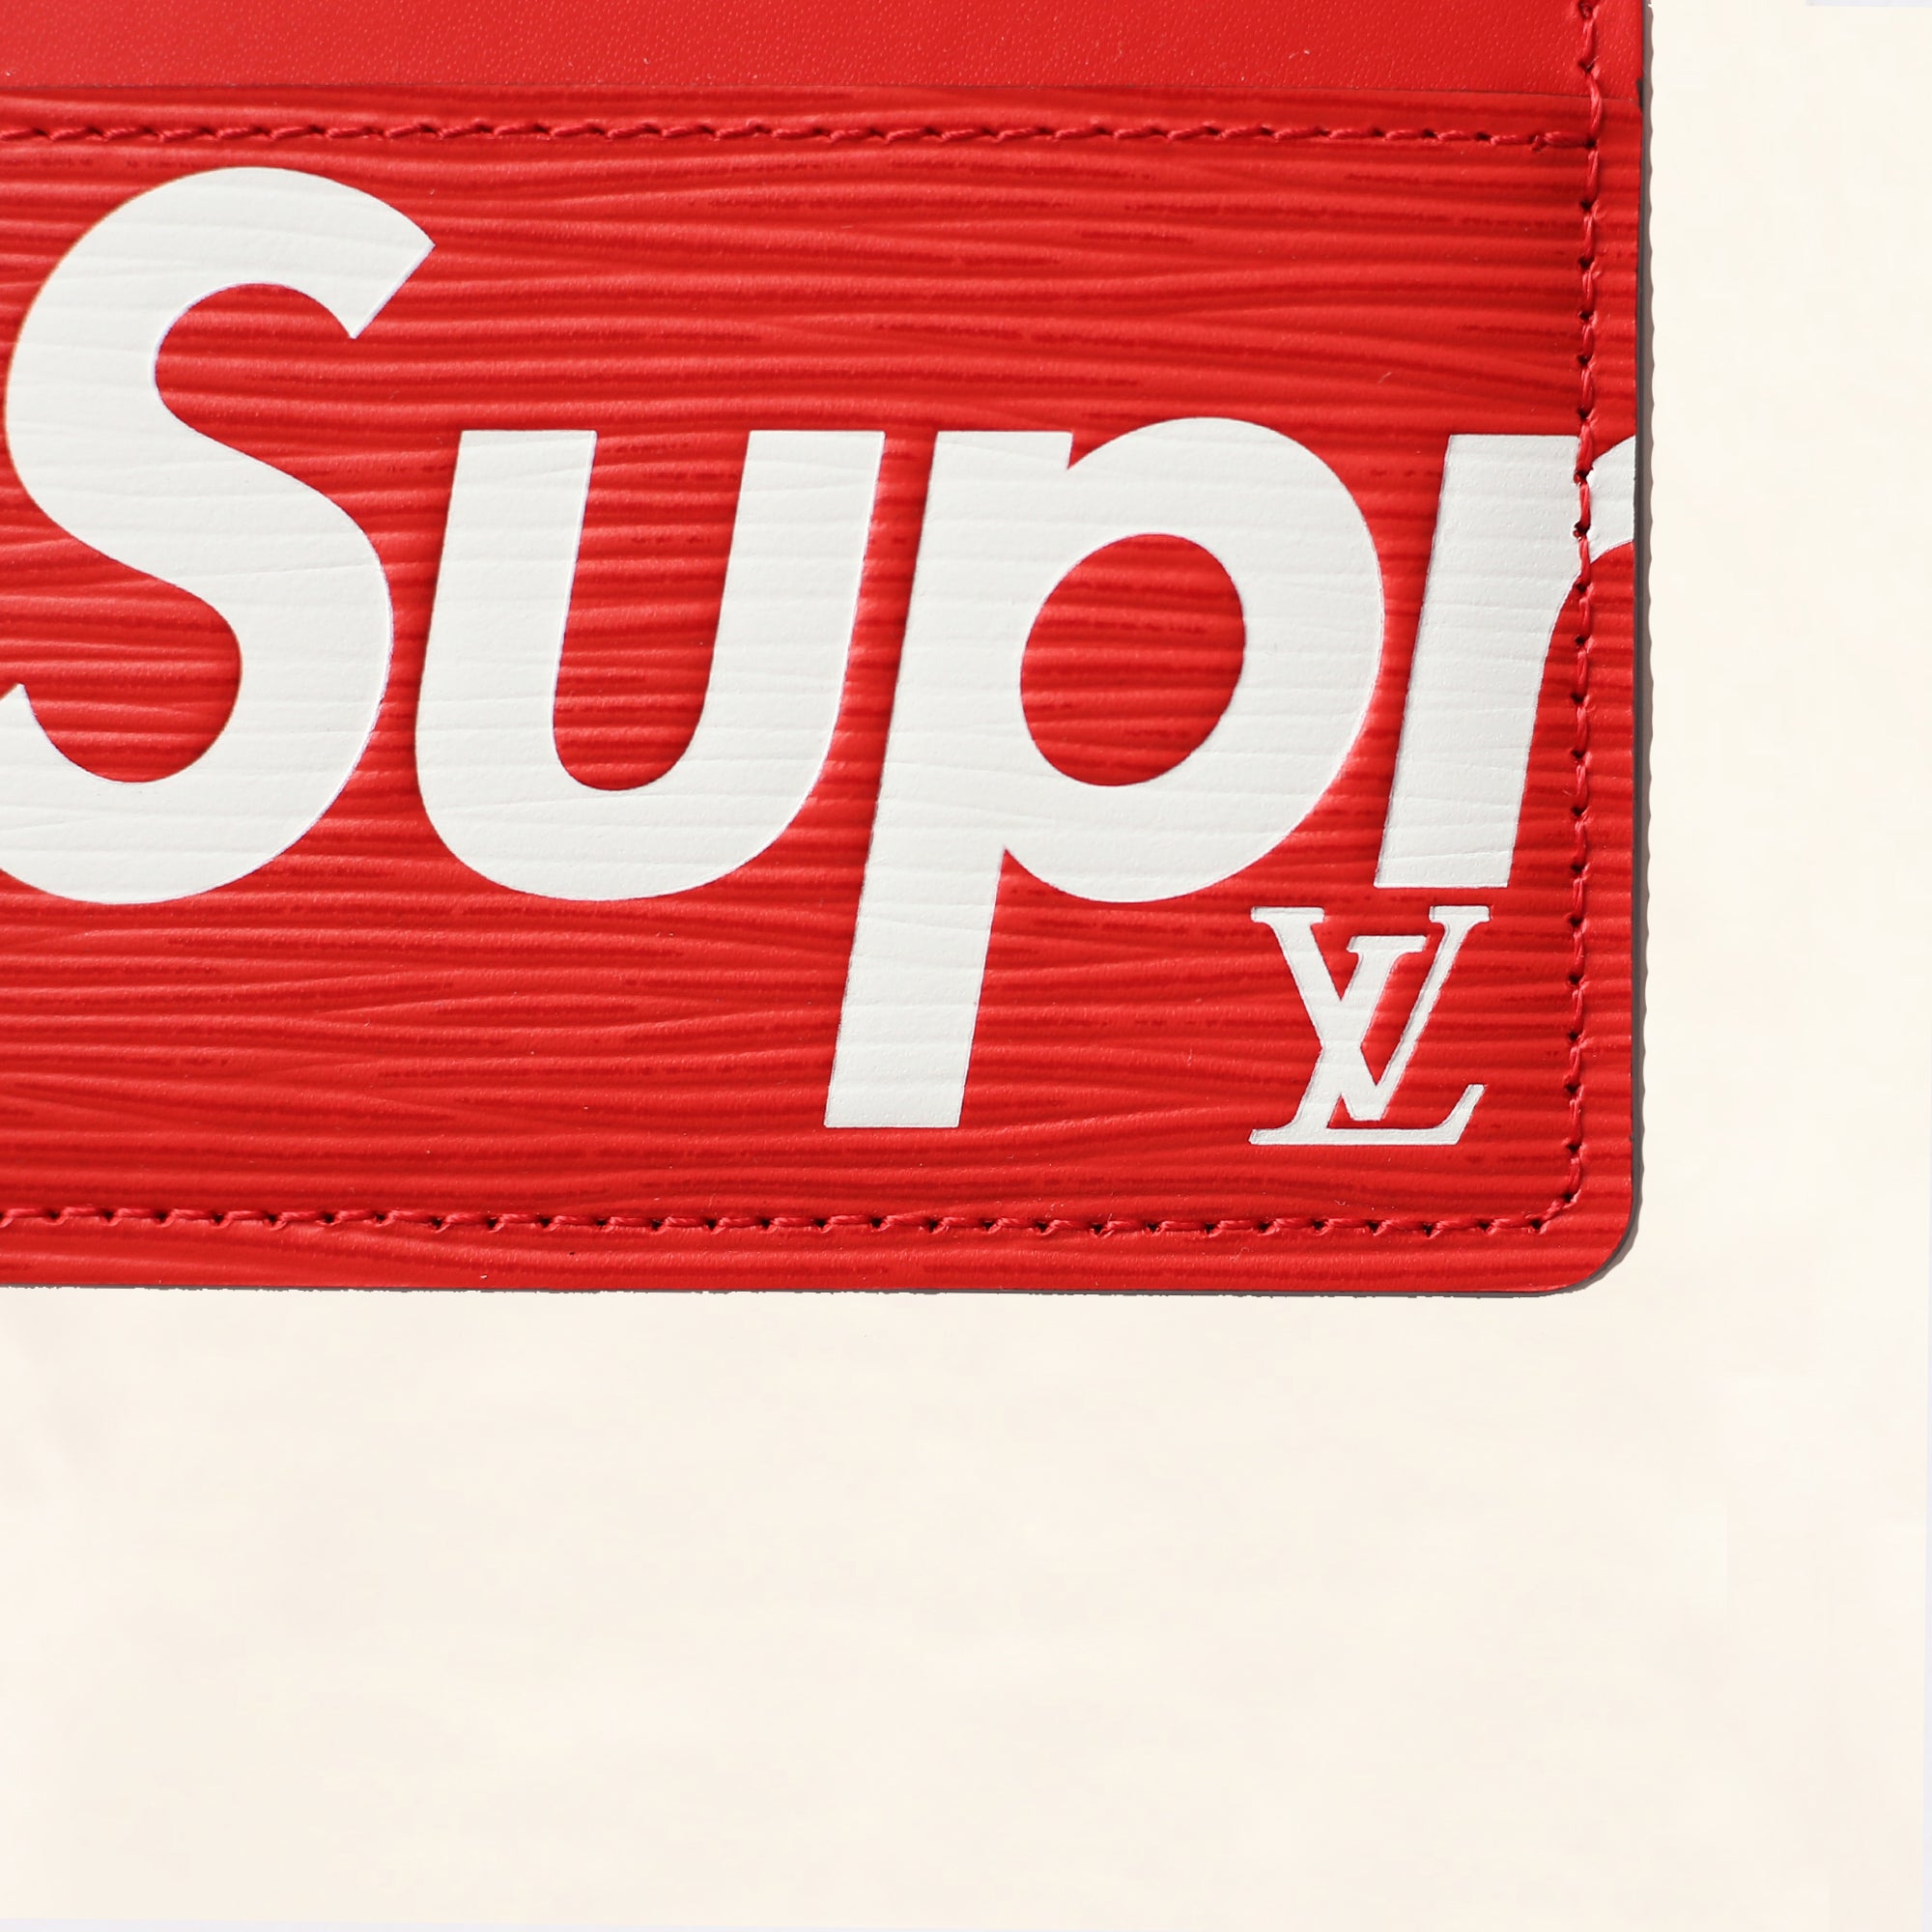 Louis Vuitton x Supreme Cardholder Review 